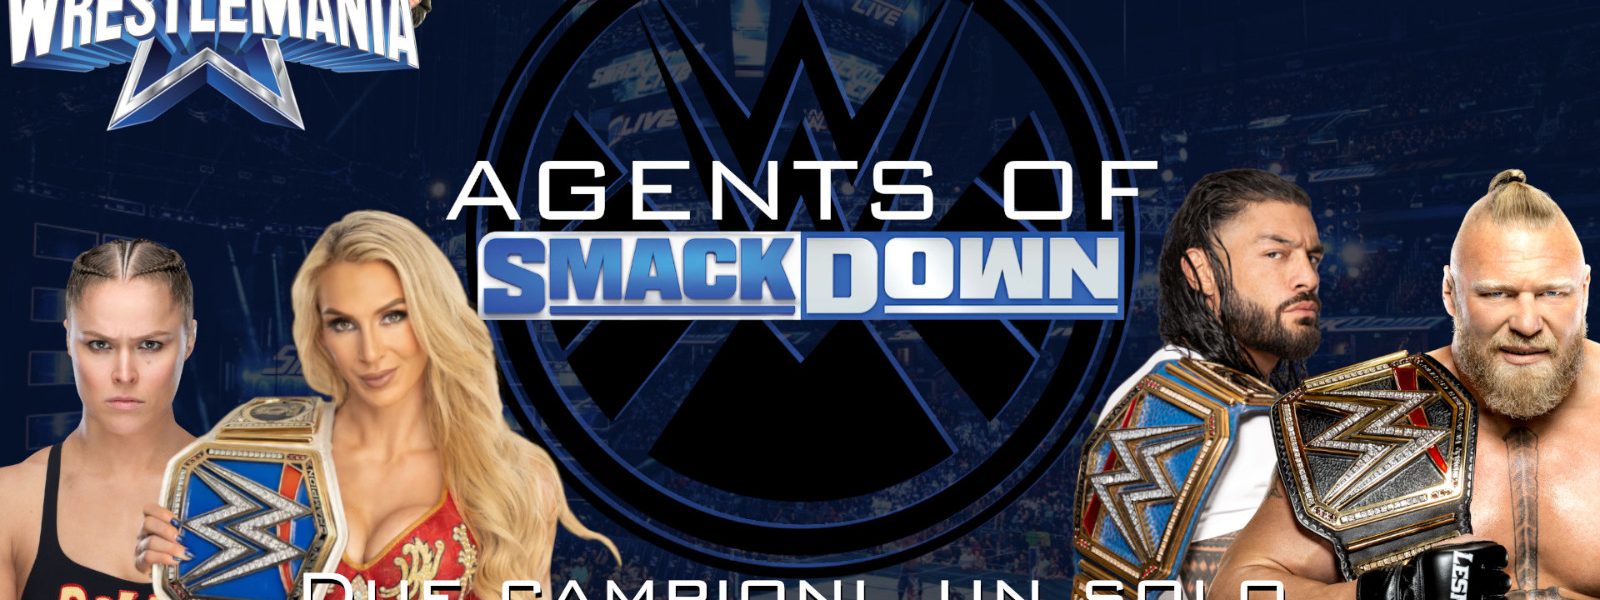 Due campioni, un solo titolo - Agents Of Smackdown EP.43